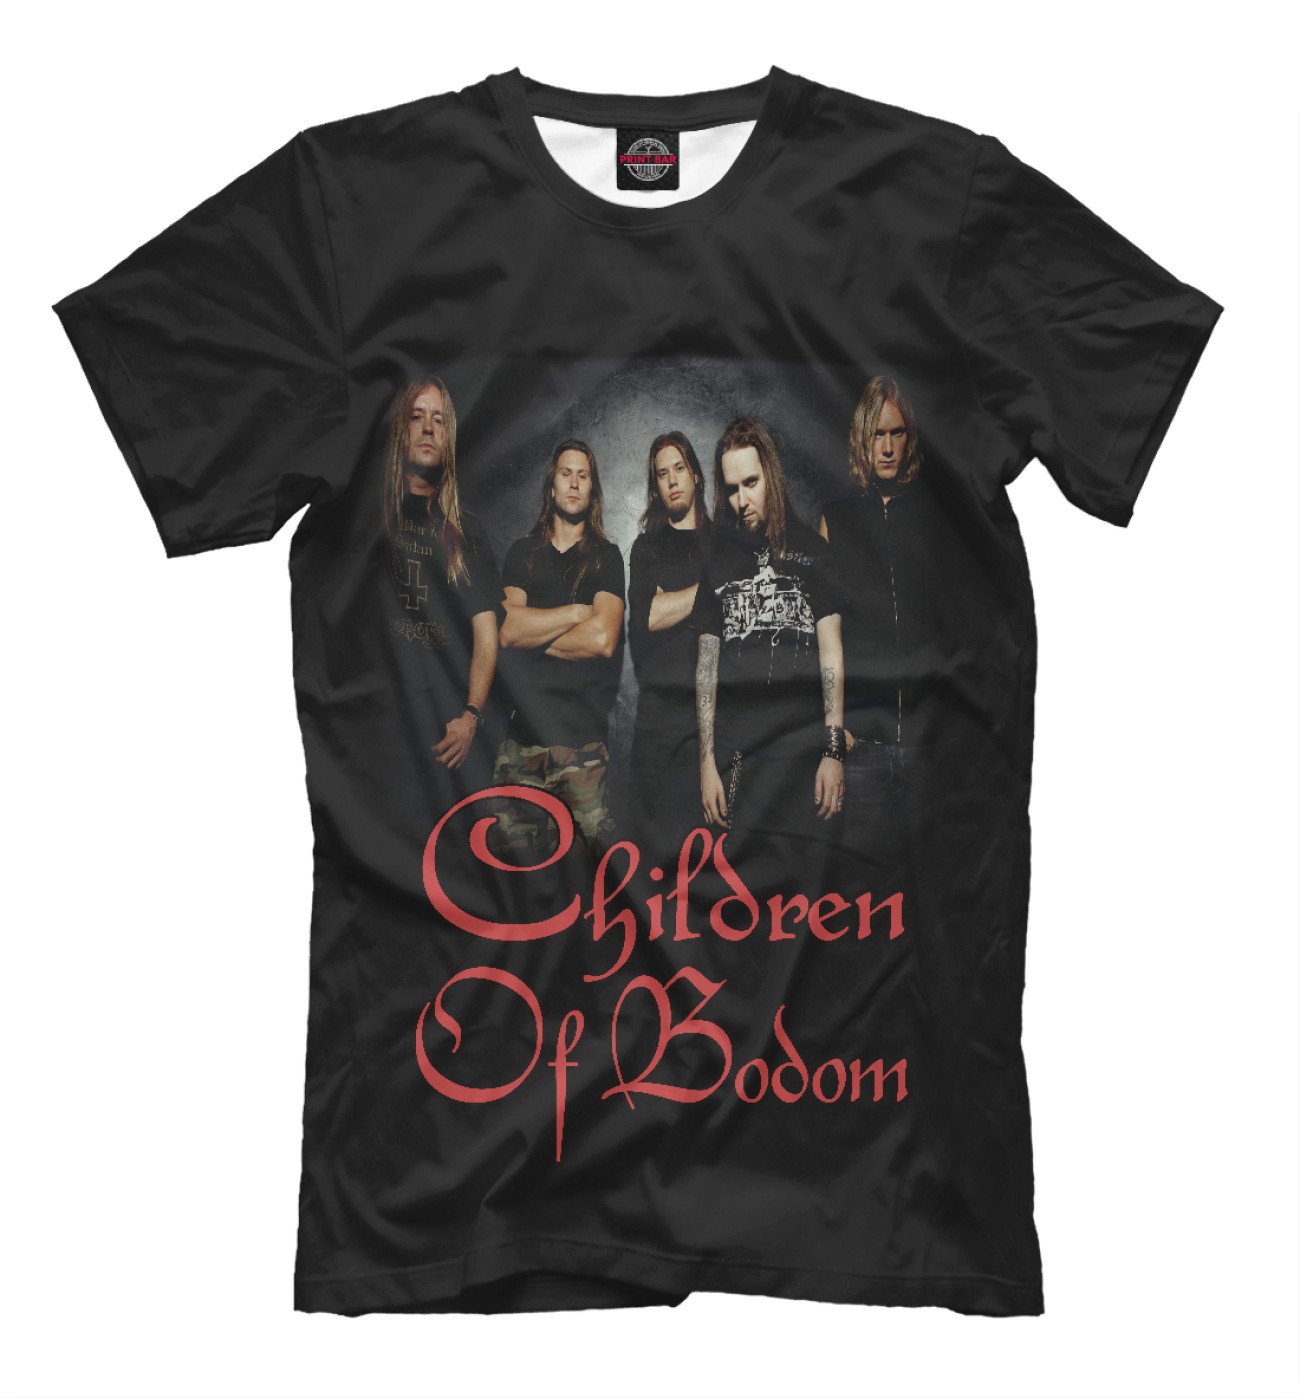 Мужская Футболка Children Of Bodom, артикул: COB-309701-fut-2